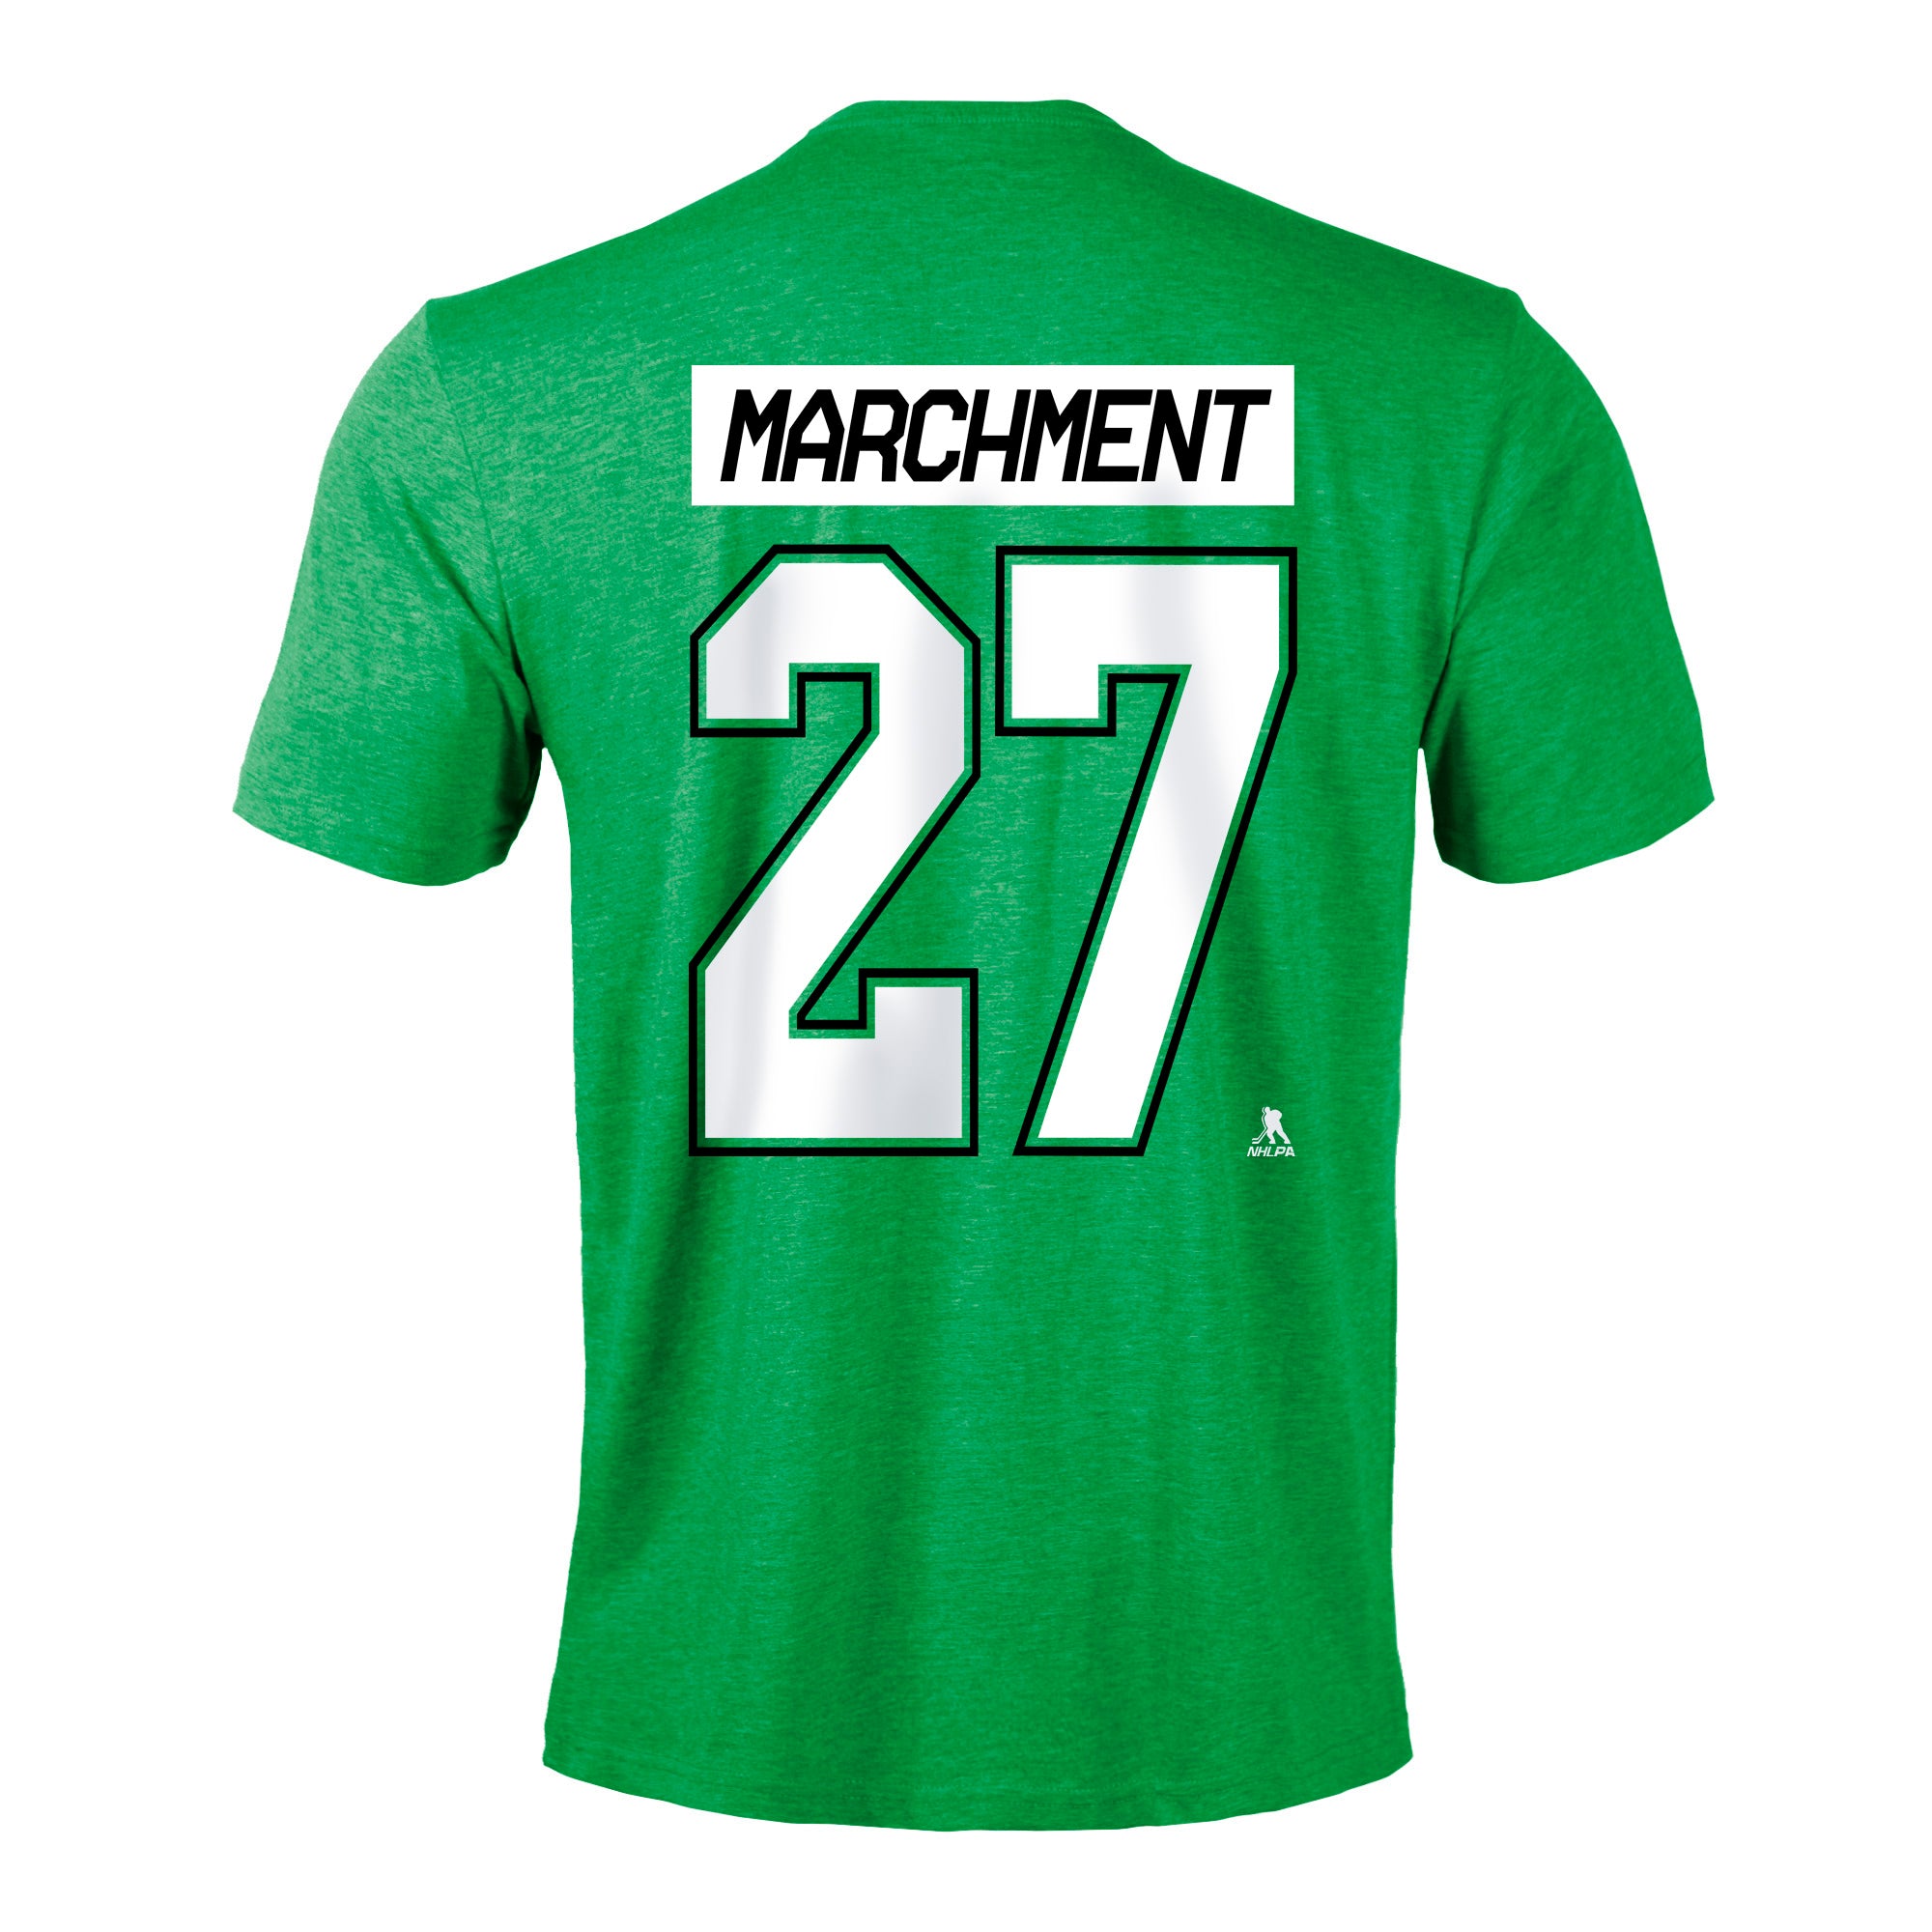 Mason Marchment Backer T-Shirt - Ash - Tshirtsedge